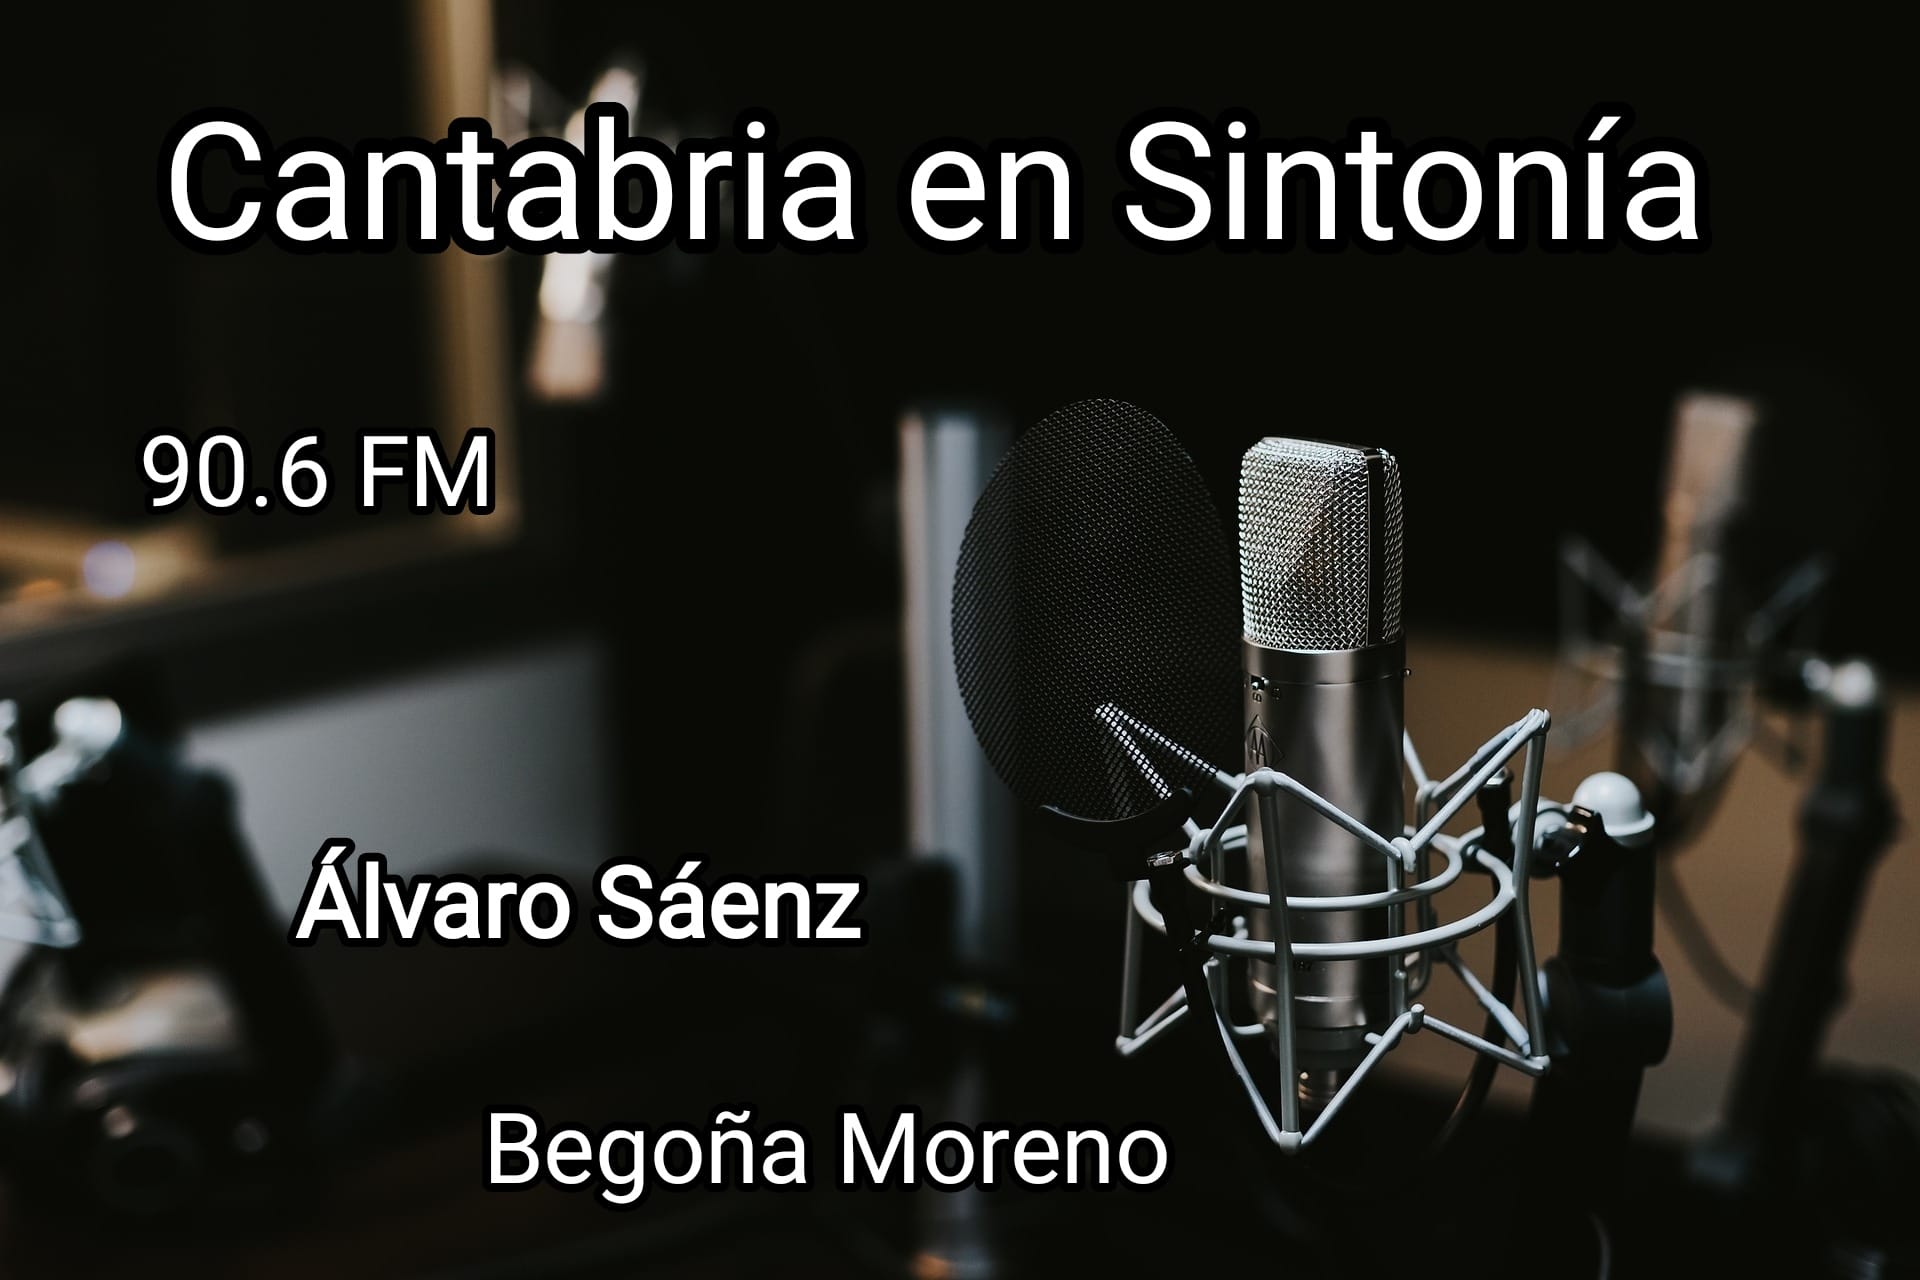 Cantabria en Sintonía en mix FM. Miércoles 22-06-2022